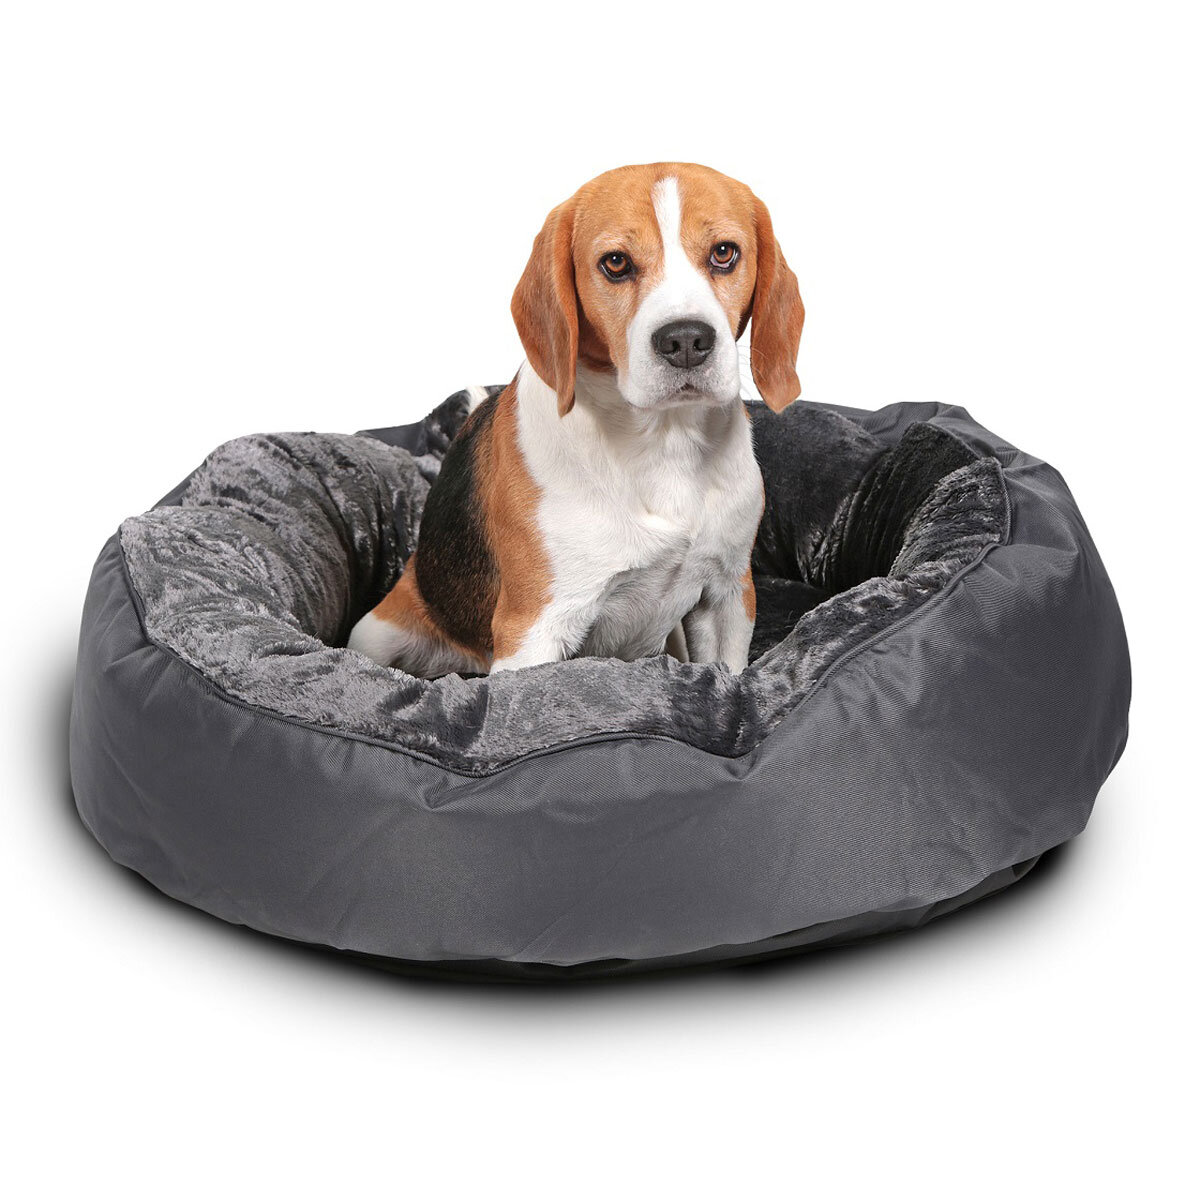 Snoozzzeee Deluxe Luxury Donut Pet Bed, 8" x 25" (20cm x 63.5cm)